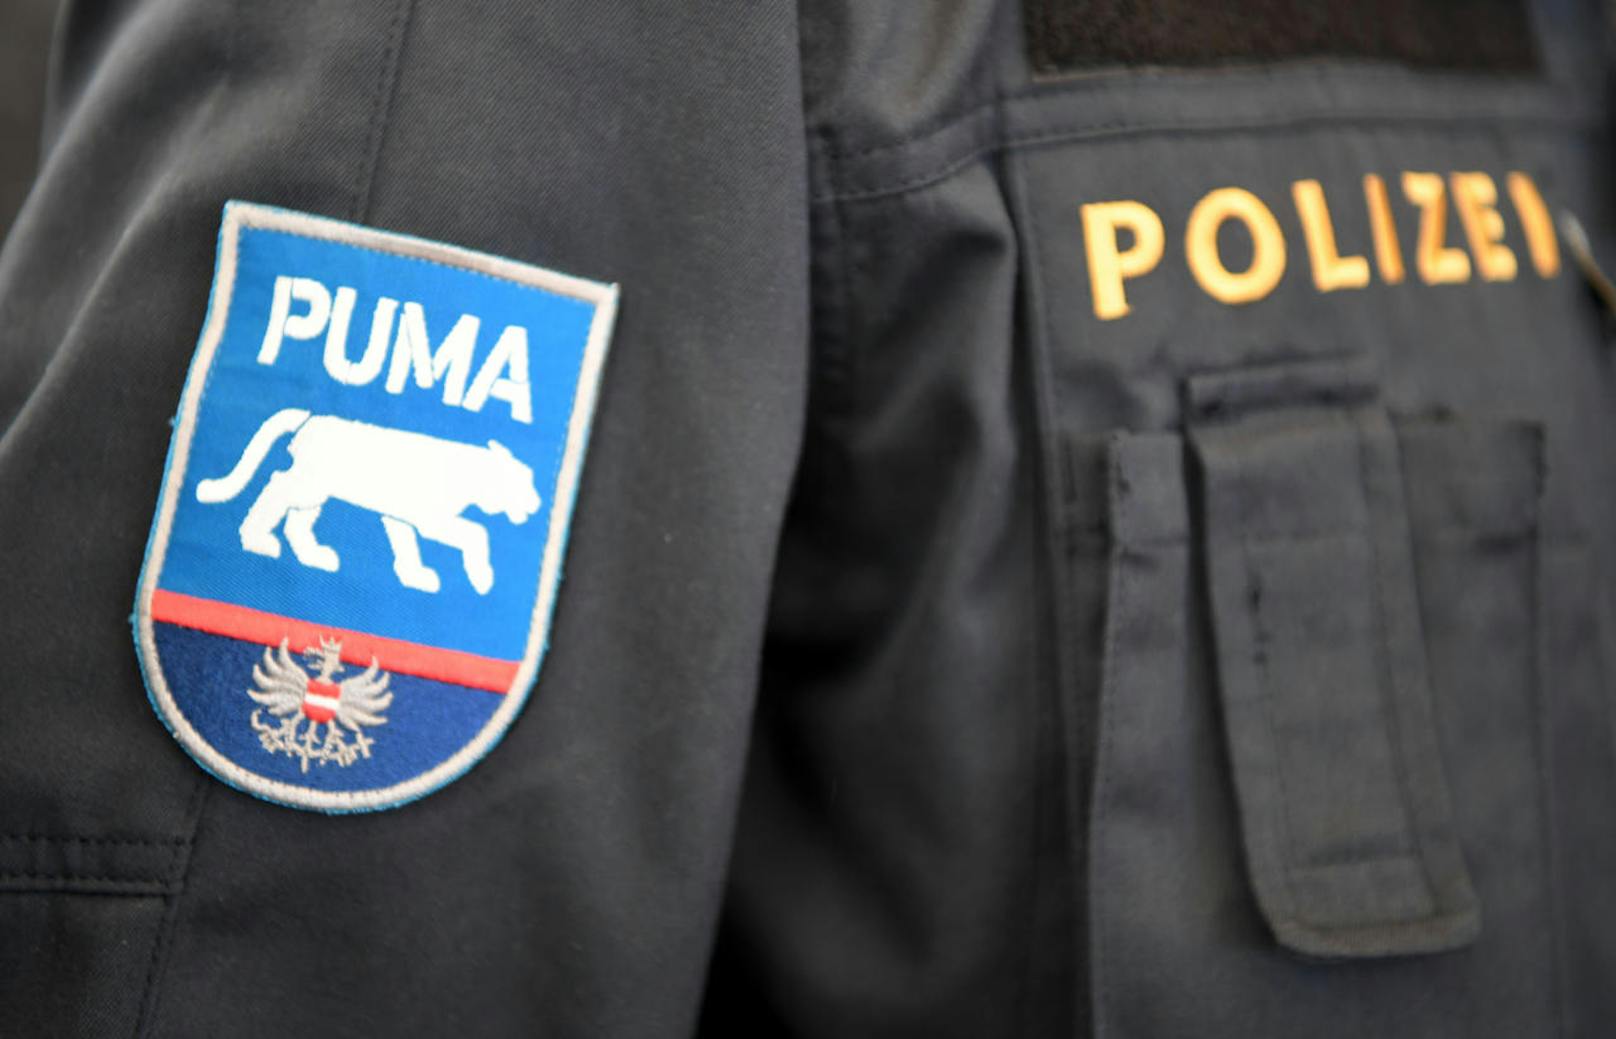 Die neue Grenzschutzeinheit "Puma" von Innenminister Herbert Kickl (FPÖ) durfte ihr Logo bereits im Rahmen einer Grenzschutzübung in Spielfeld (Kosten: 205.000 Euro) präsentieren. Das Ministerium will allerdings nicht ganz so offen zur Schau stellen, woher das Logo eigentlich kommt.